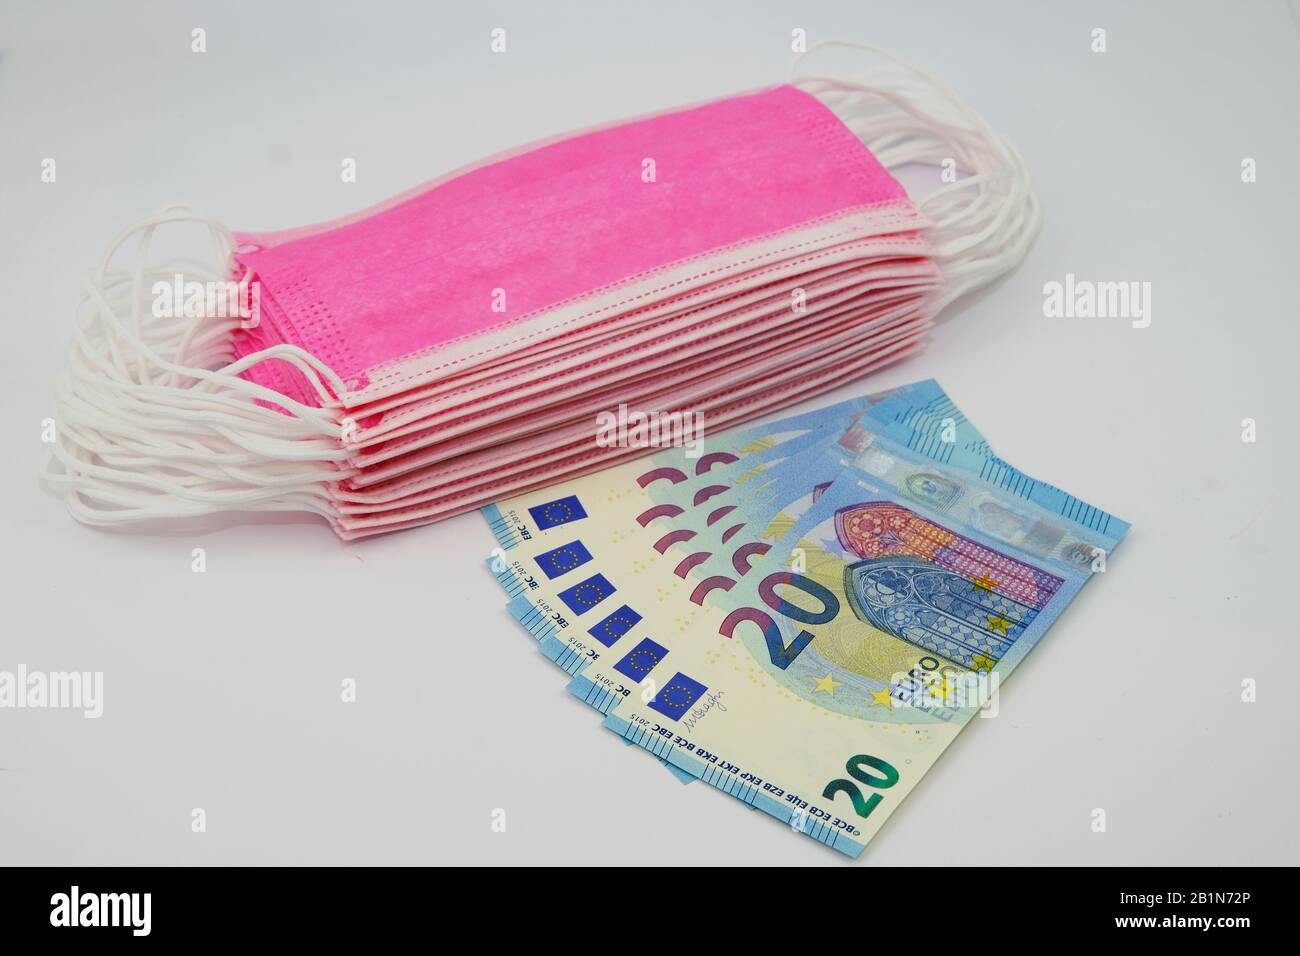 Rosafarbene Gesichtsmasken für den Virenschutz und 20 Euro-Banknoten. Konzept für den hohen Preis von chirurgischen Masken während der Epidemie in Europa Stockfoto